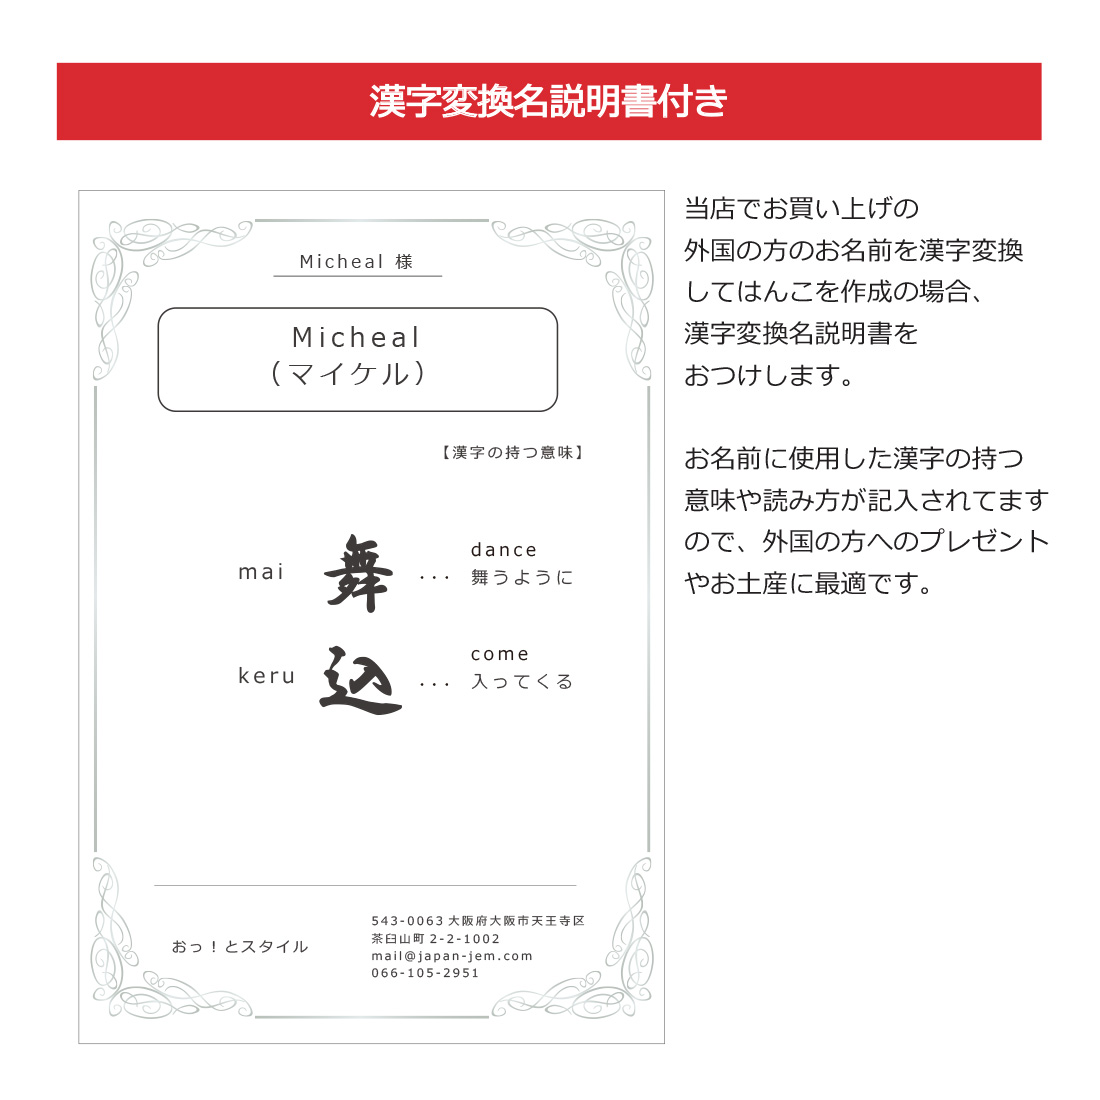 漢字変換で彫刻させて頂いた場合は、漢字変換説明書をお付けいたします。